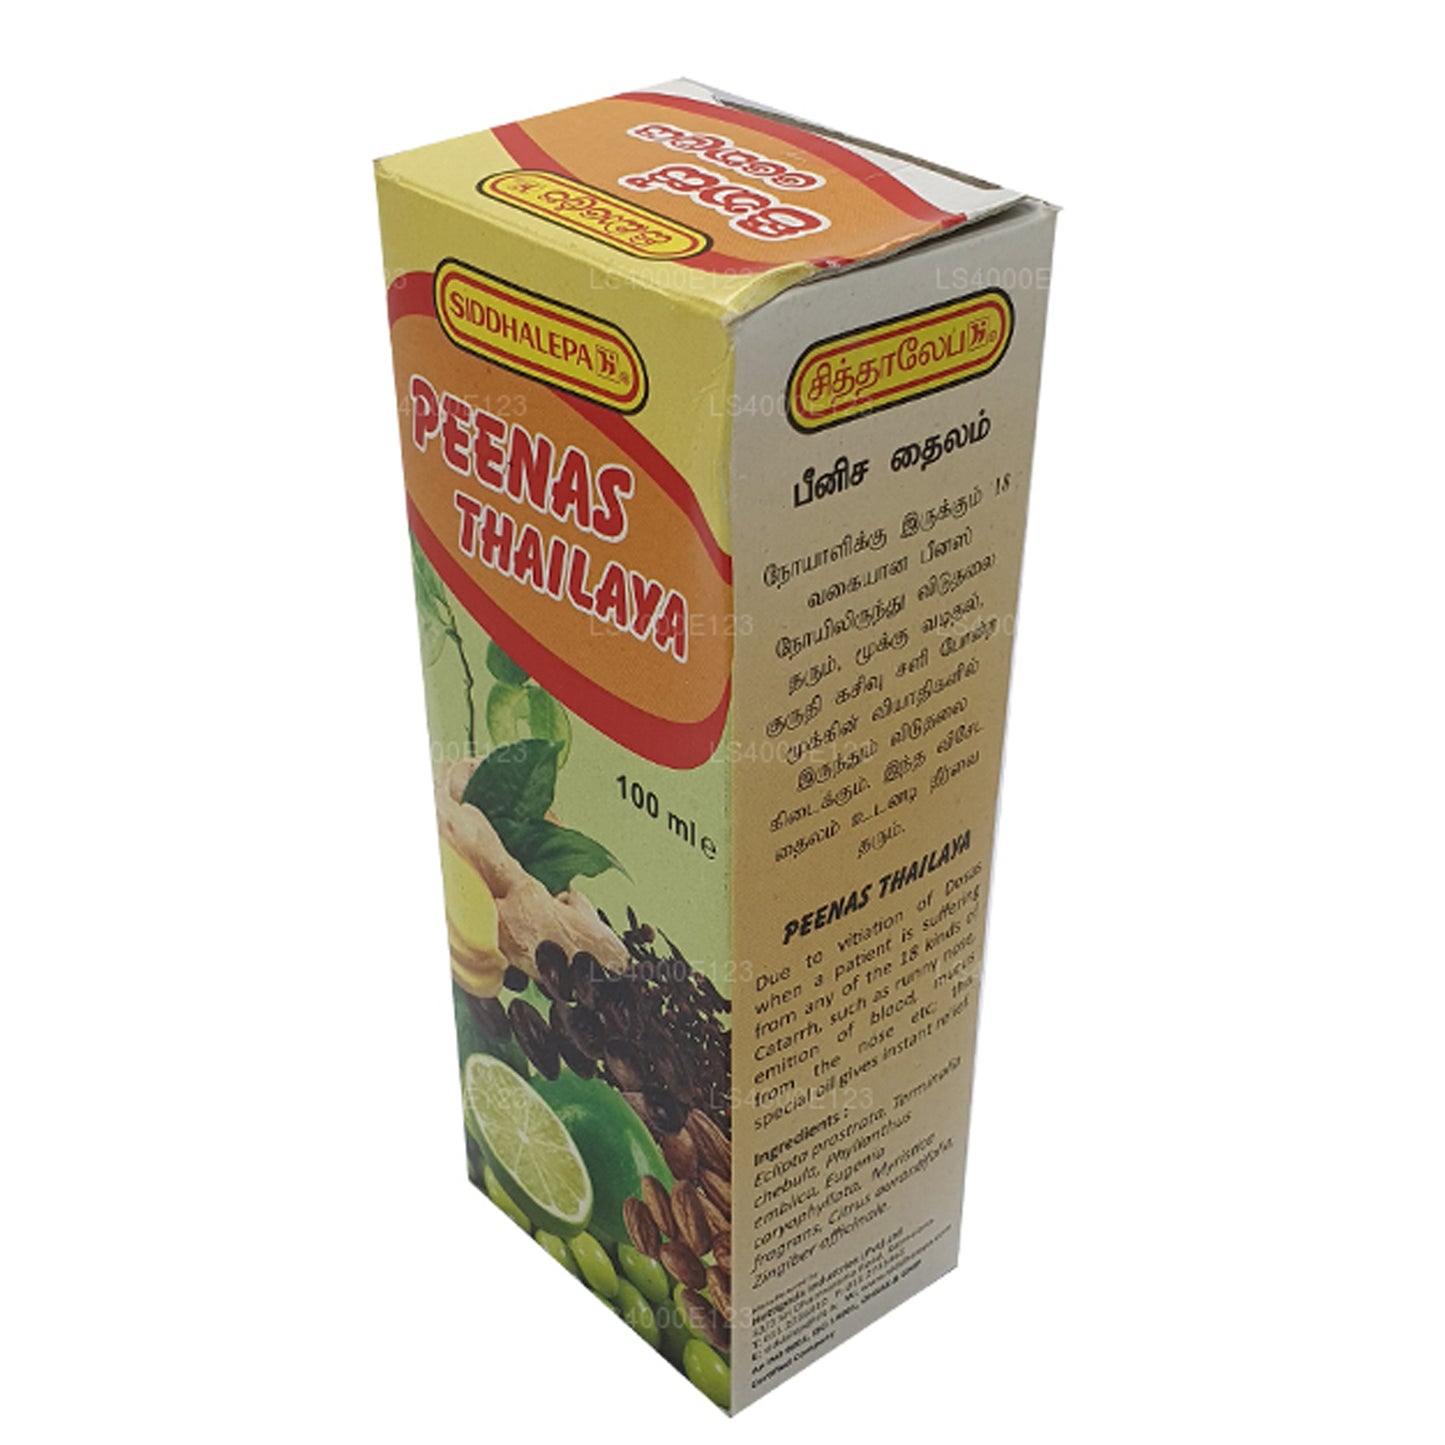 Siddhalepa Peenas-olie (30 ml)